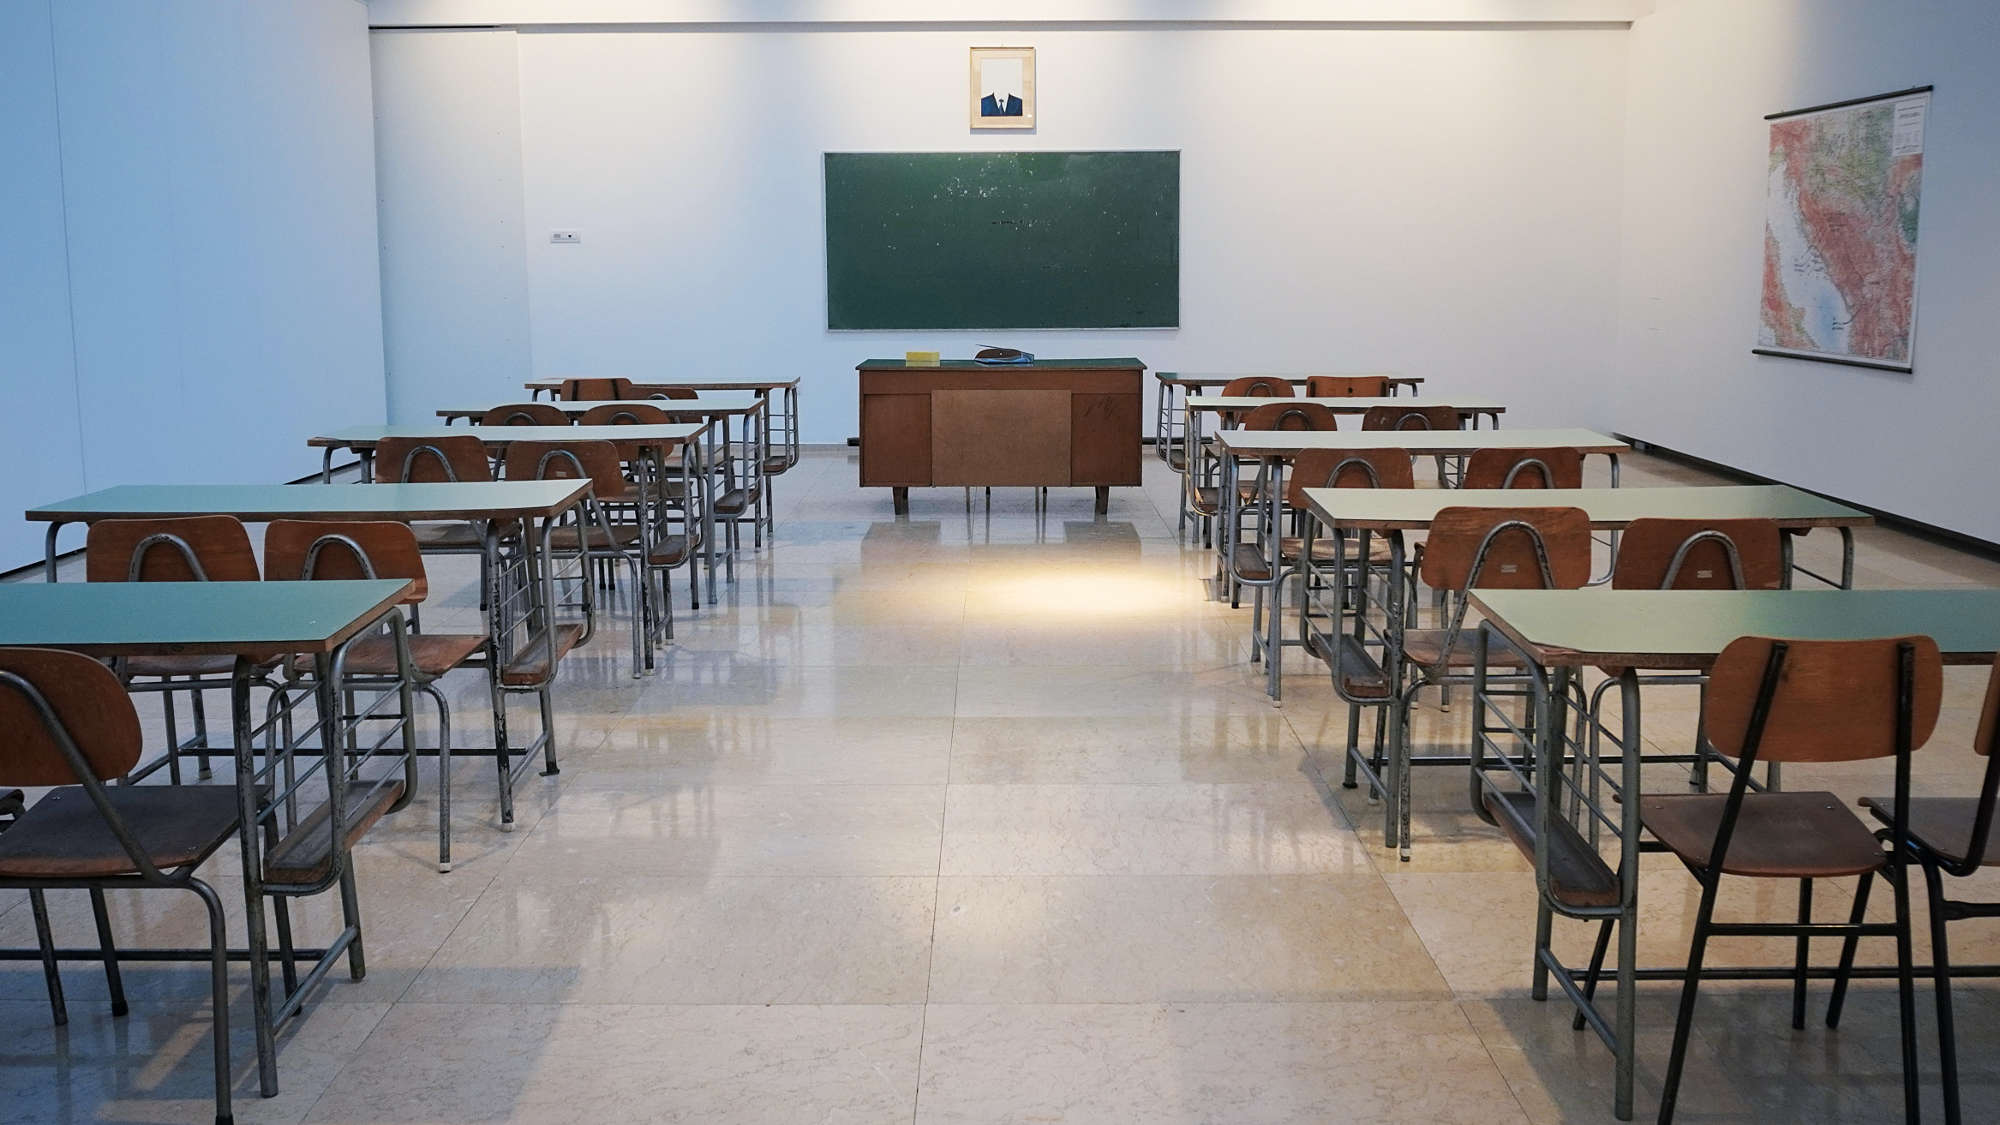 Desks in an empty school room